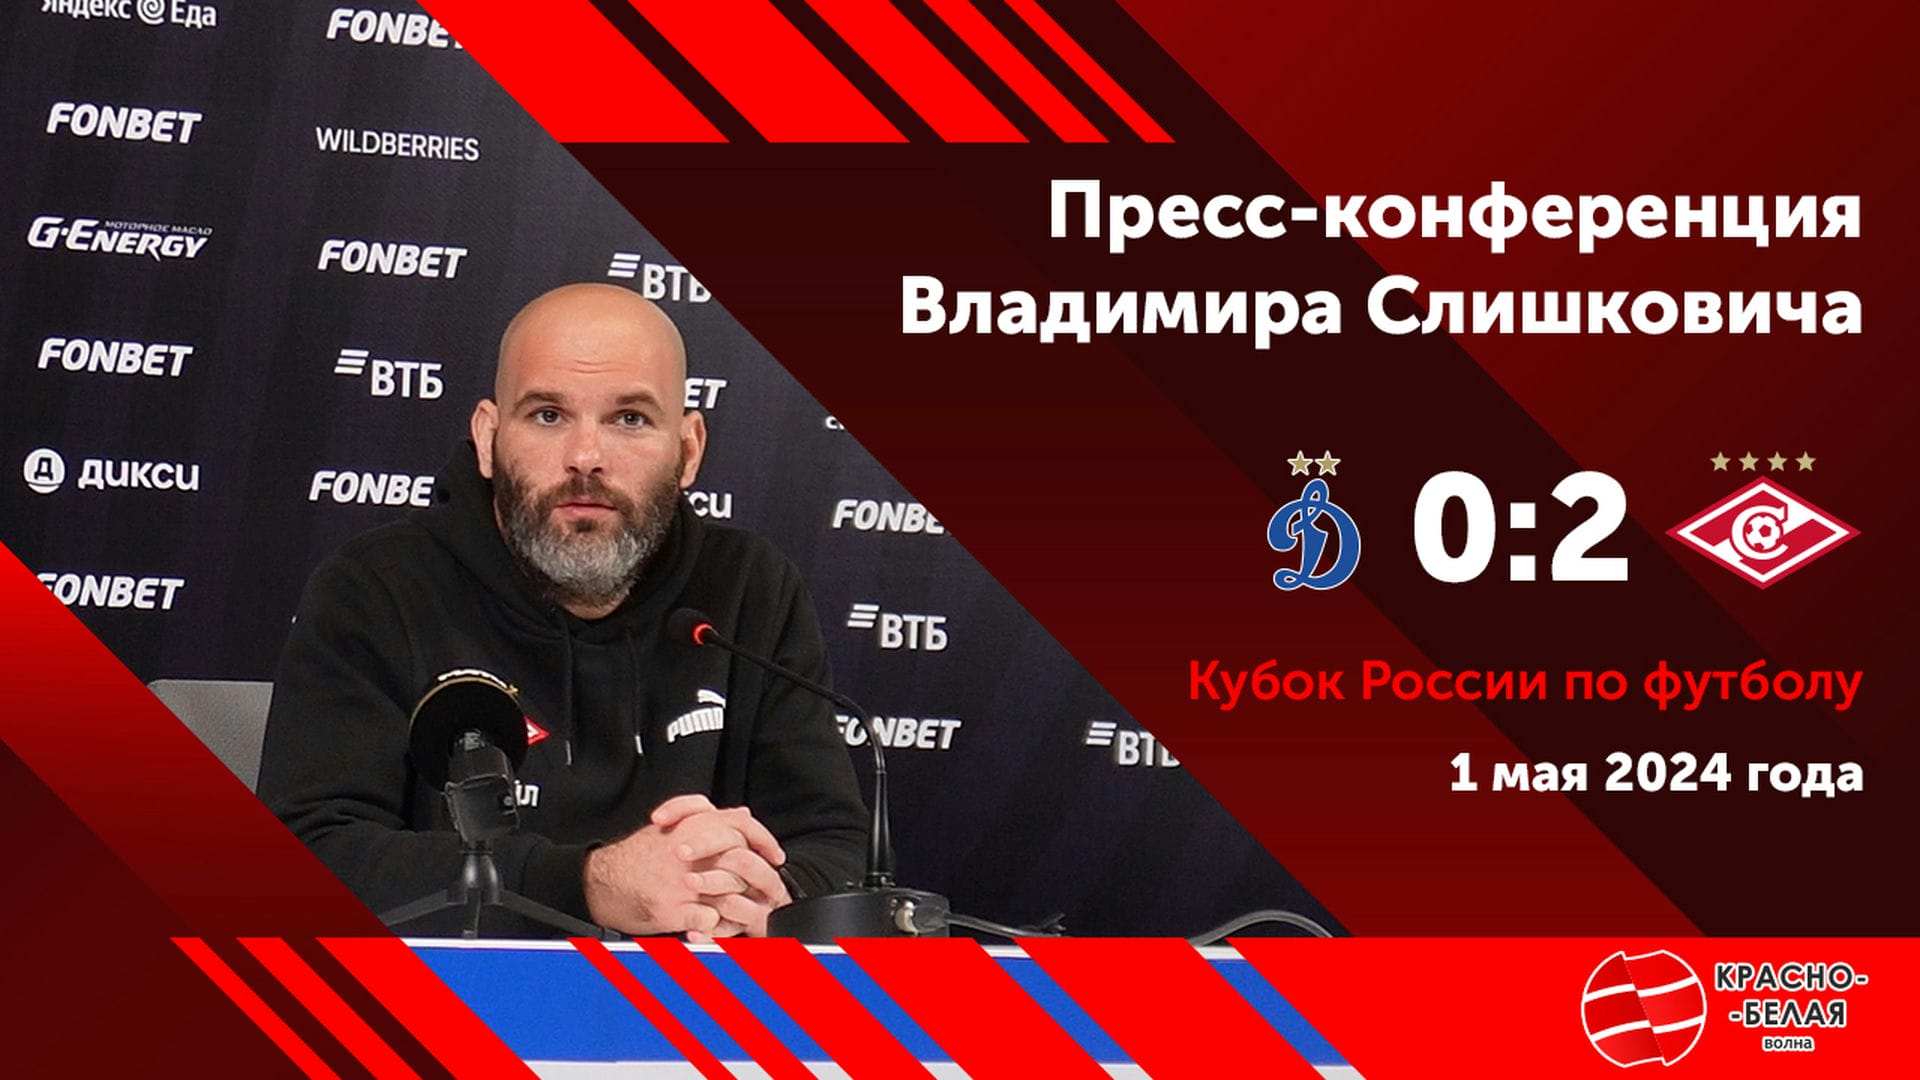 «Наверное, потому что я лысый», - Владимир Слишкович о победе в дерби над «Динамо».